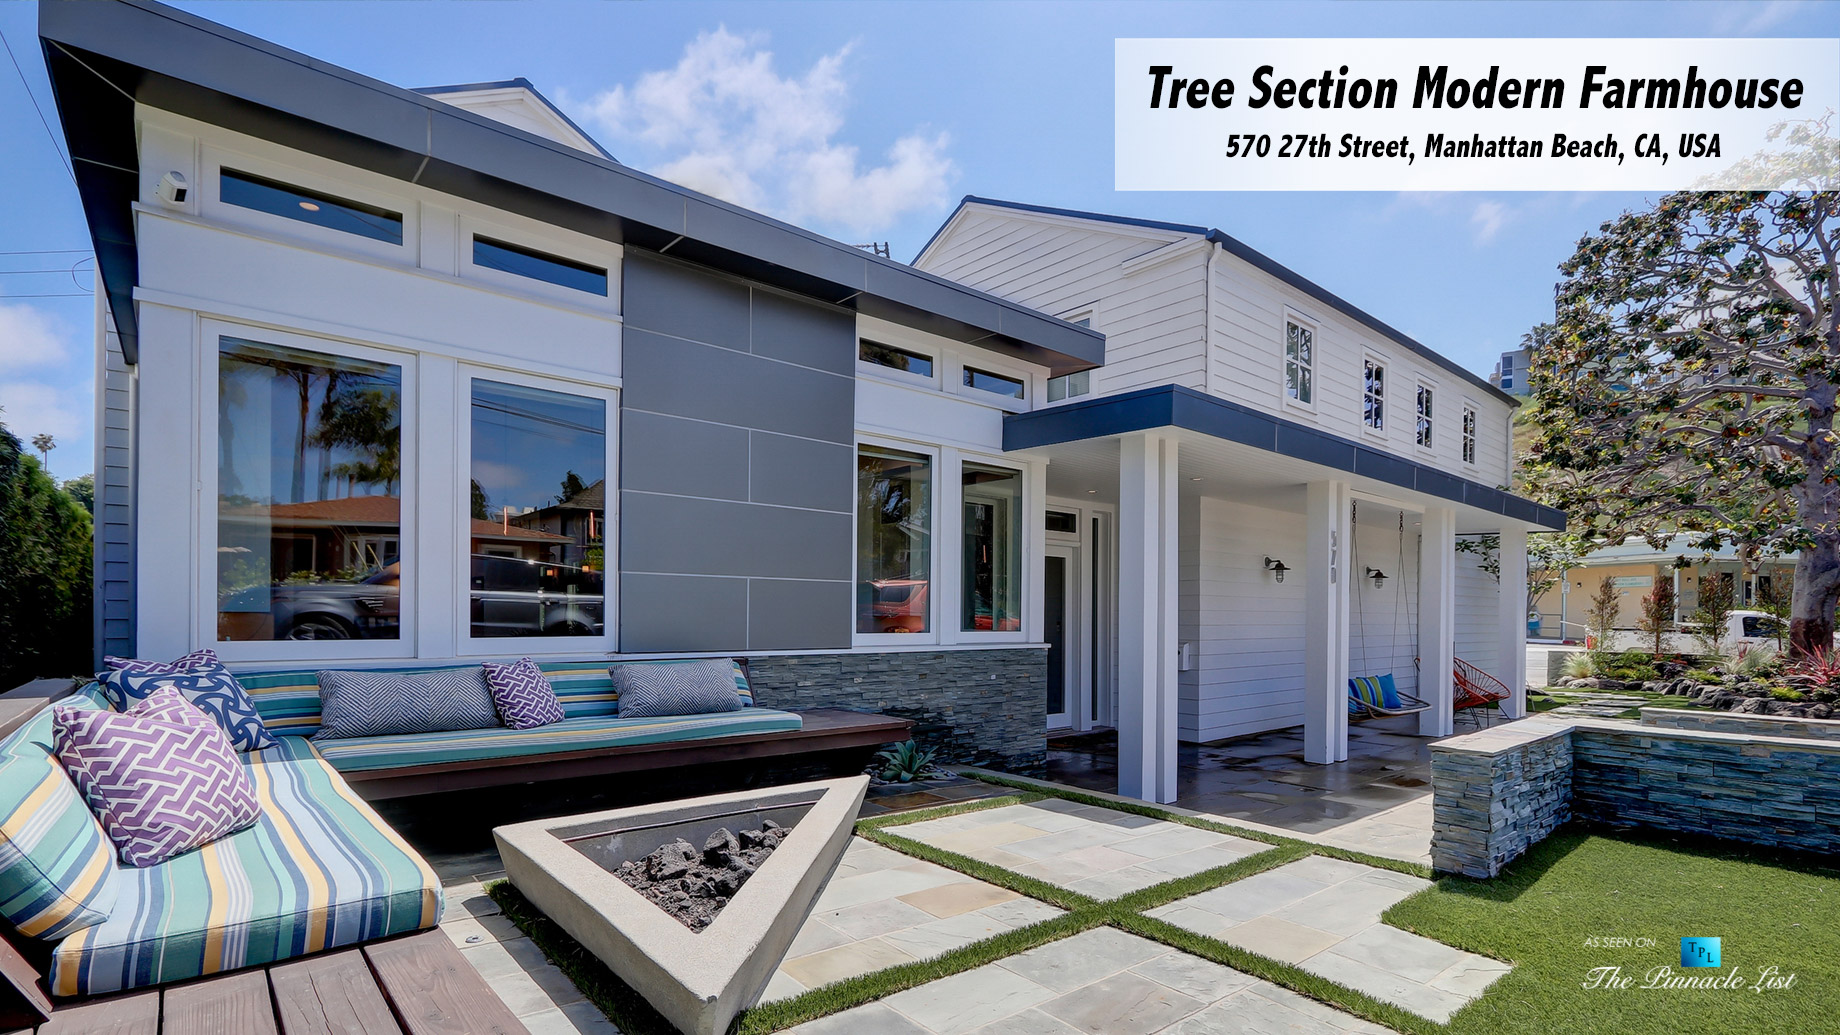 Tree Section Modern Farmhouse - 570 27th Street, Manhattan Beach, CA, USA